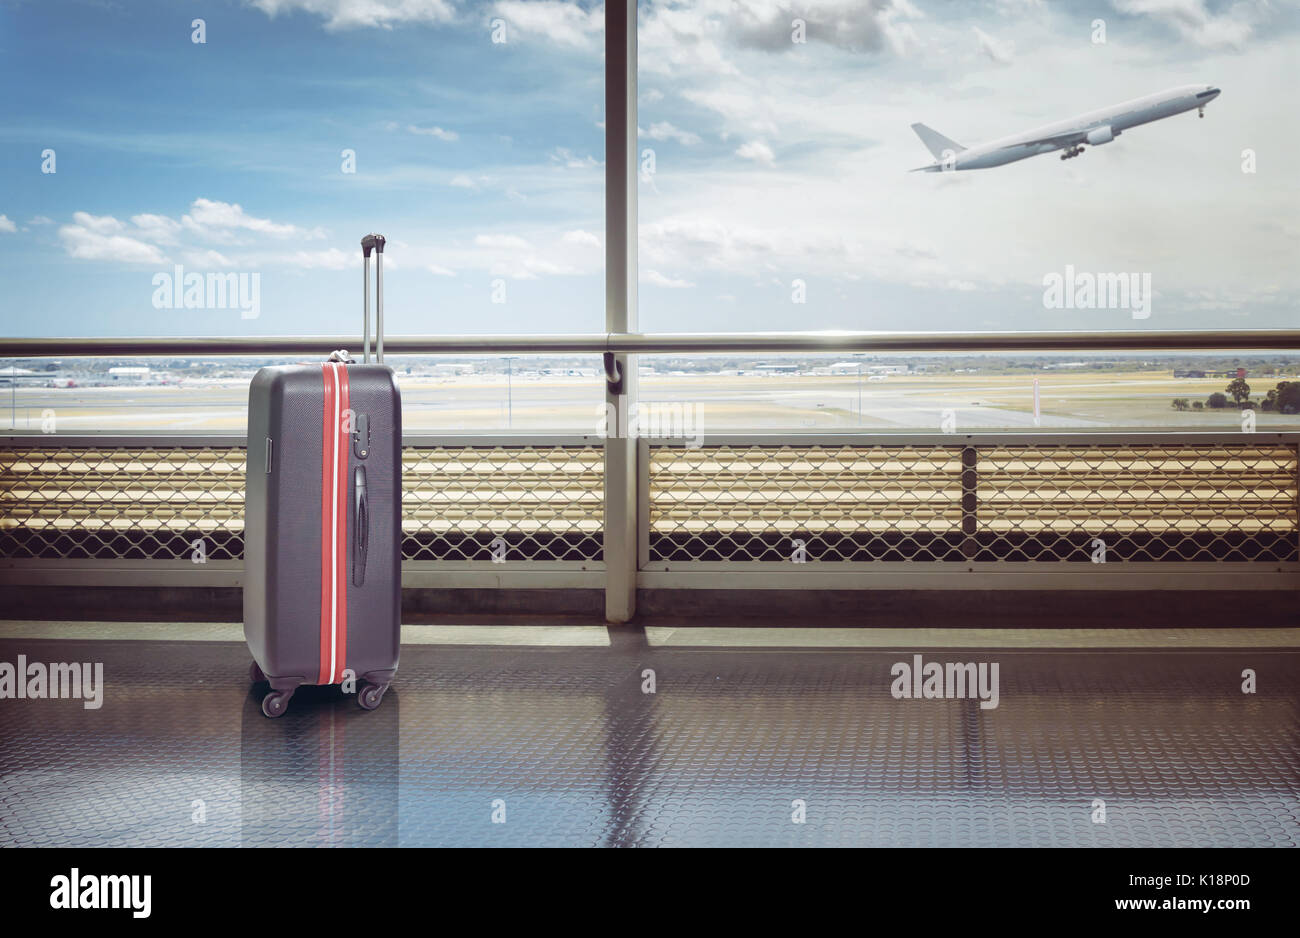 Koffer im Flughafen Abflughalle, Flugzeug im Hintergrund, Sommerurlaub Konzept, traveler Koffer im Flughafen Terminal warten. Stockfoto